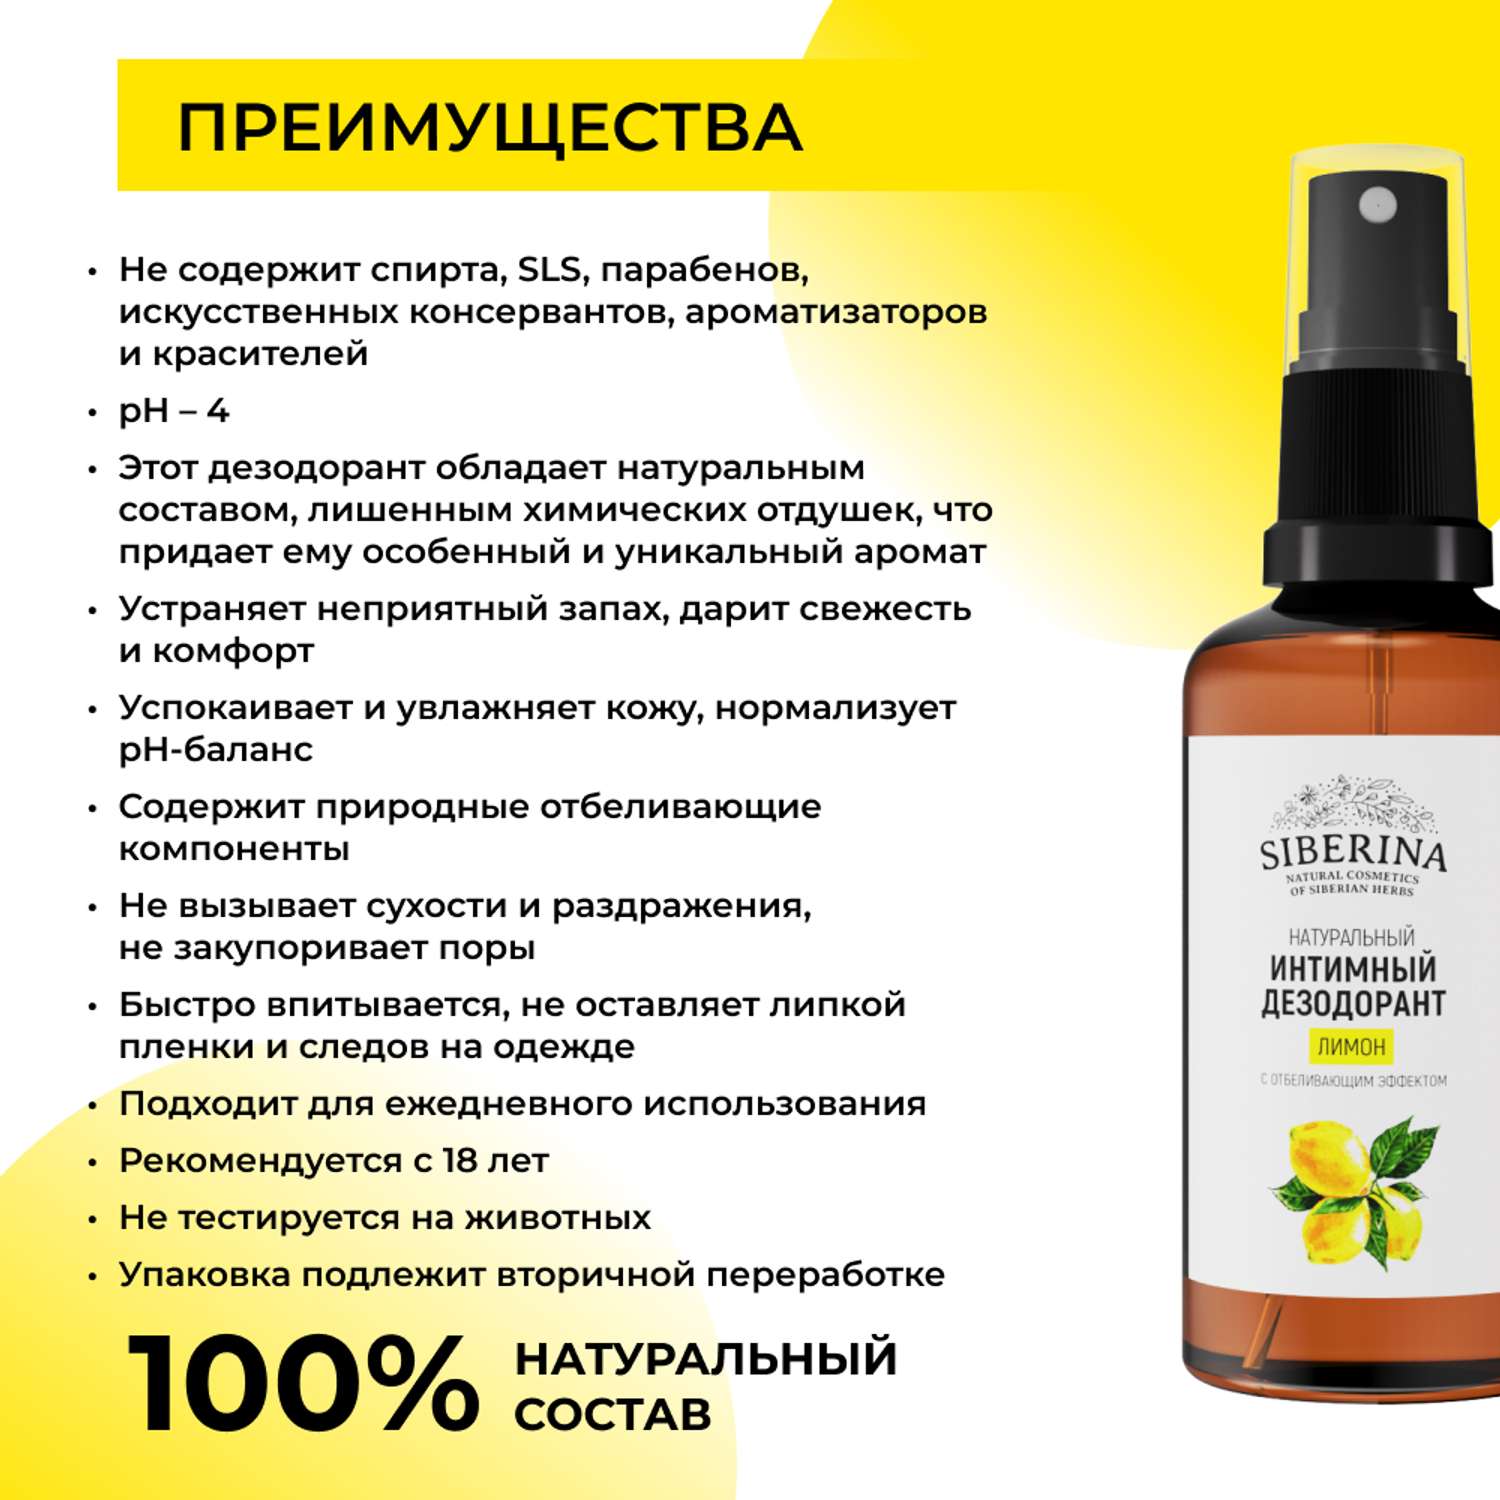 Интимный дезодорант Siberina натуральный «Лимон» с отбеливающим эффектом 50 мл - фото 3